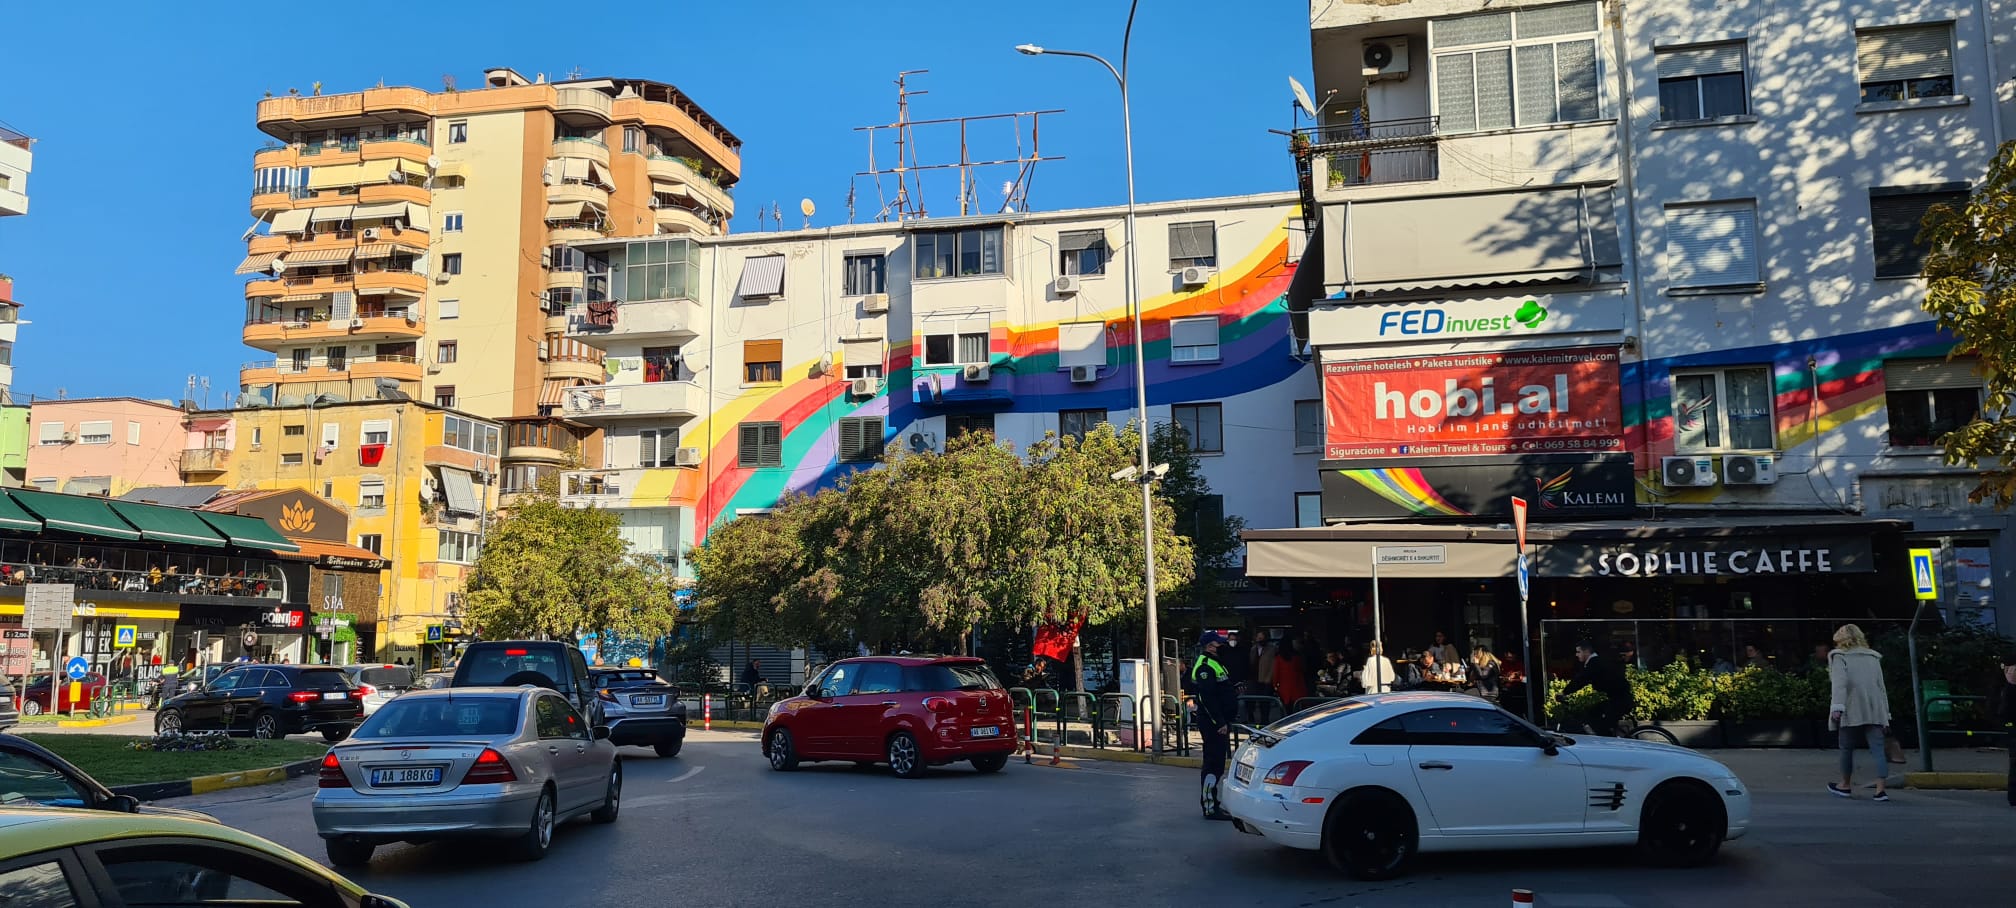 gay tourism albania